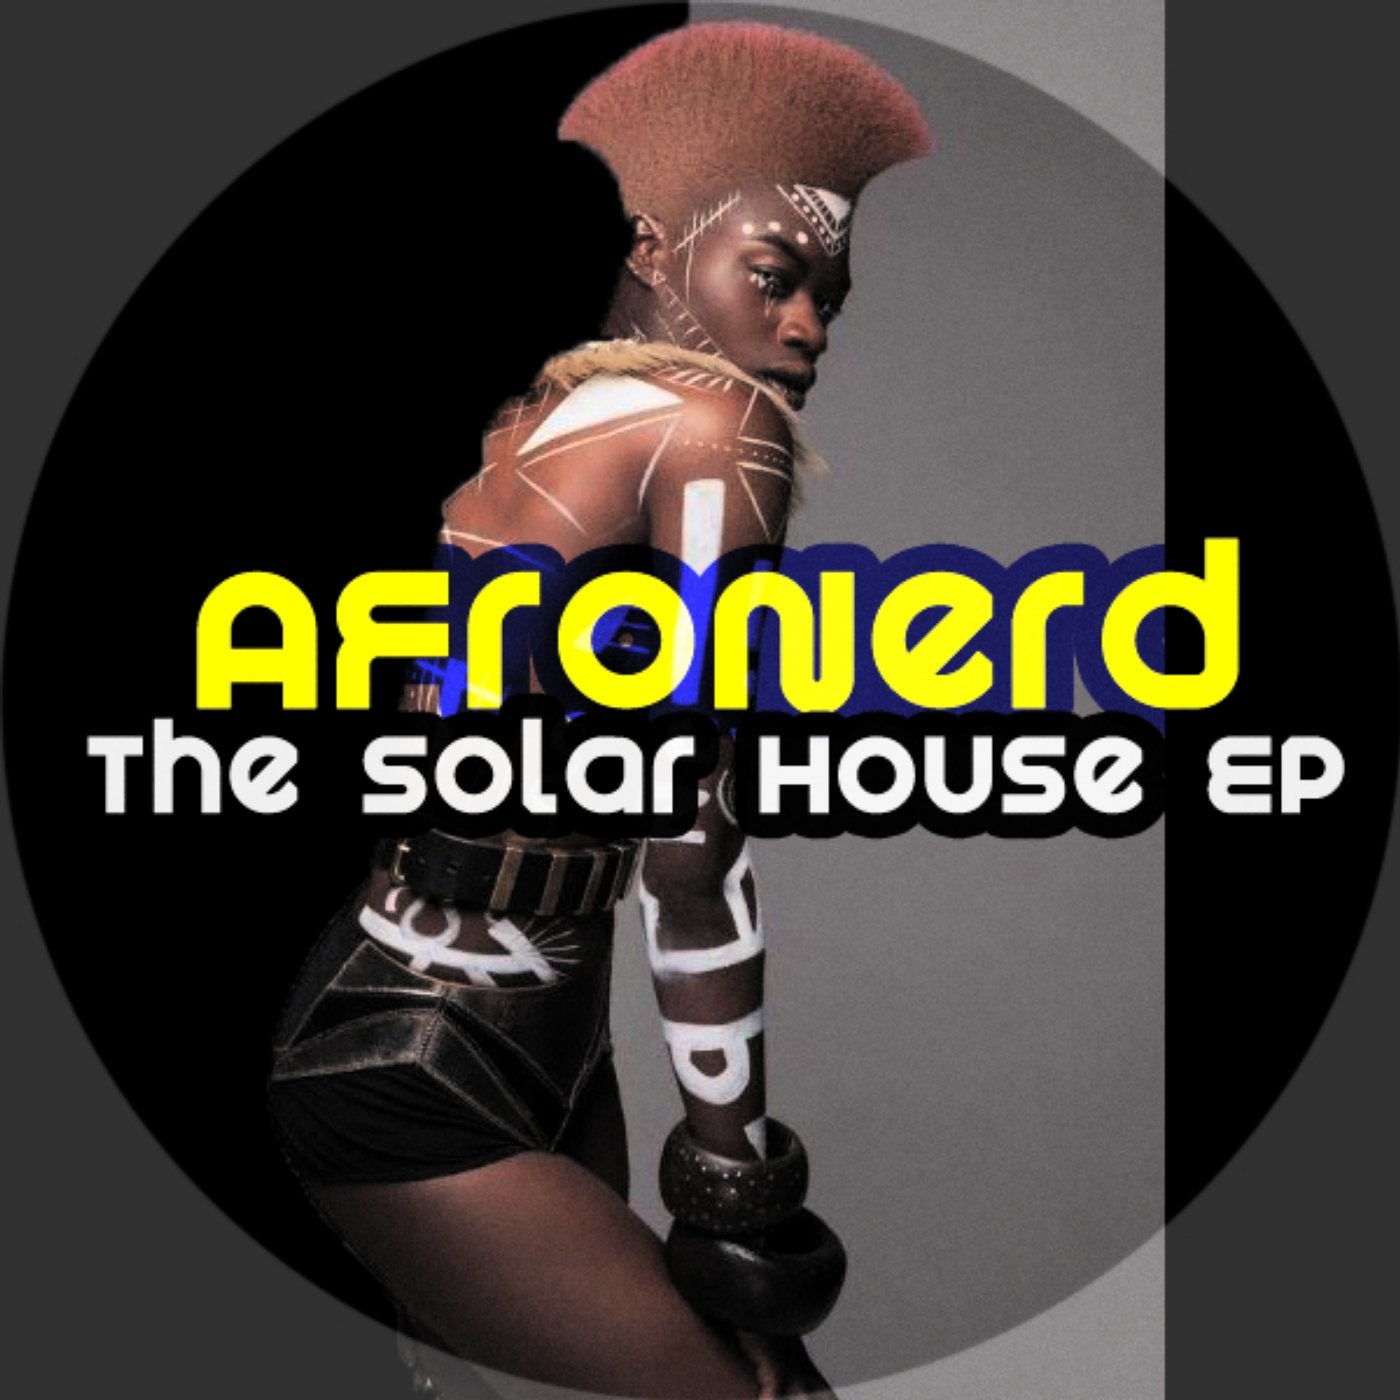 The Solar House EP